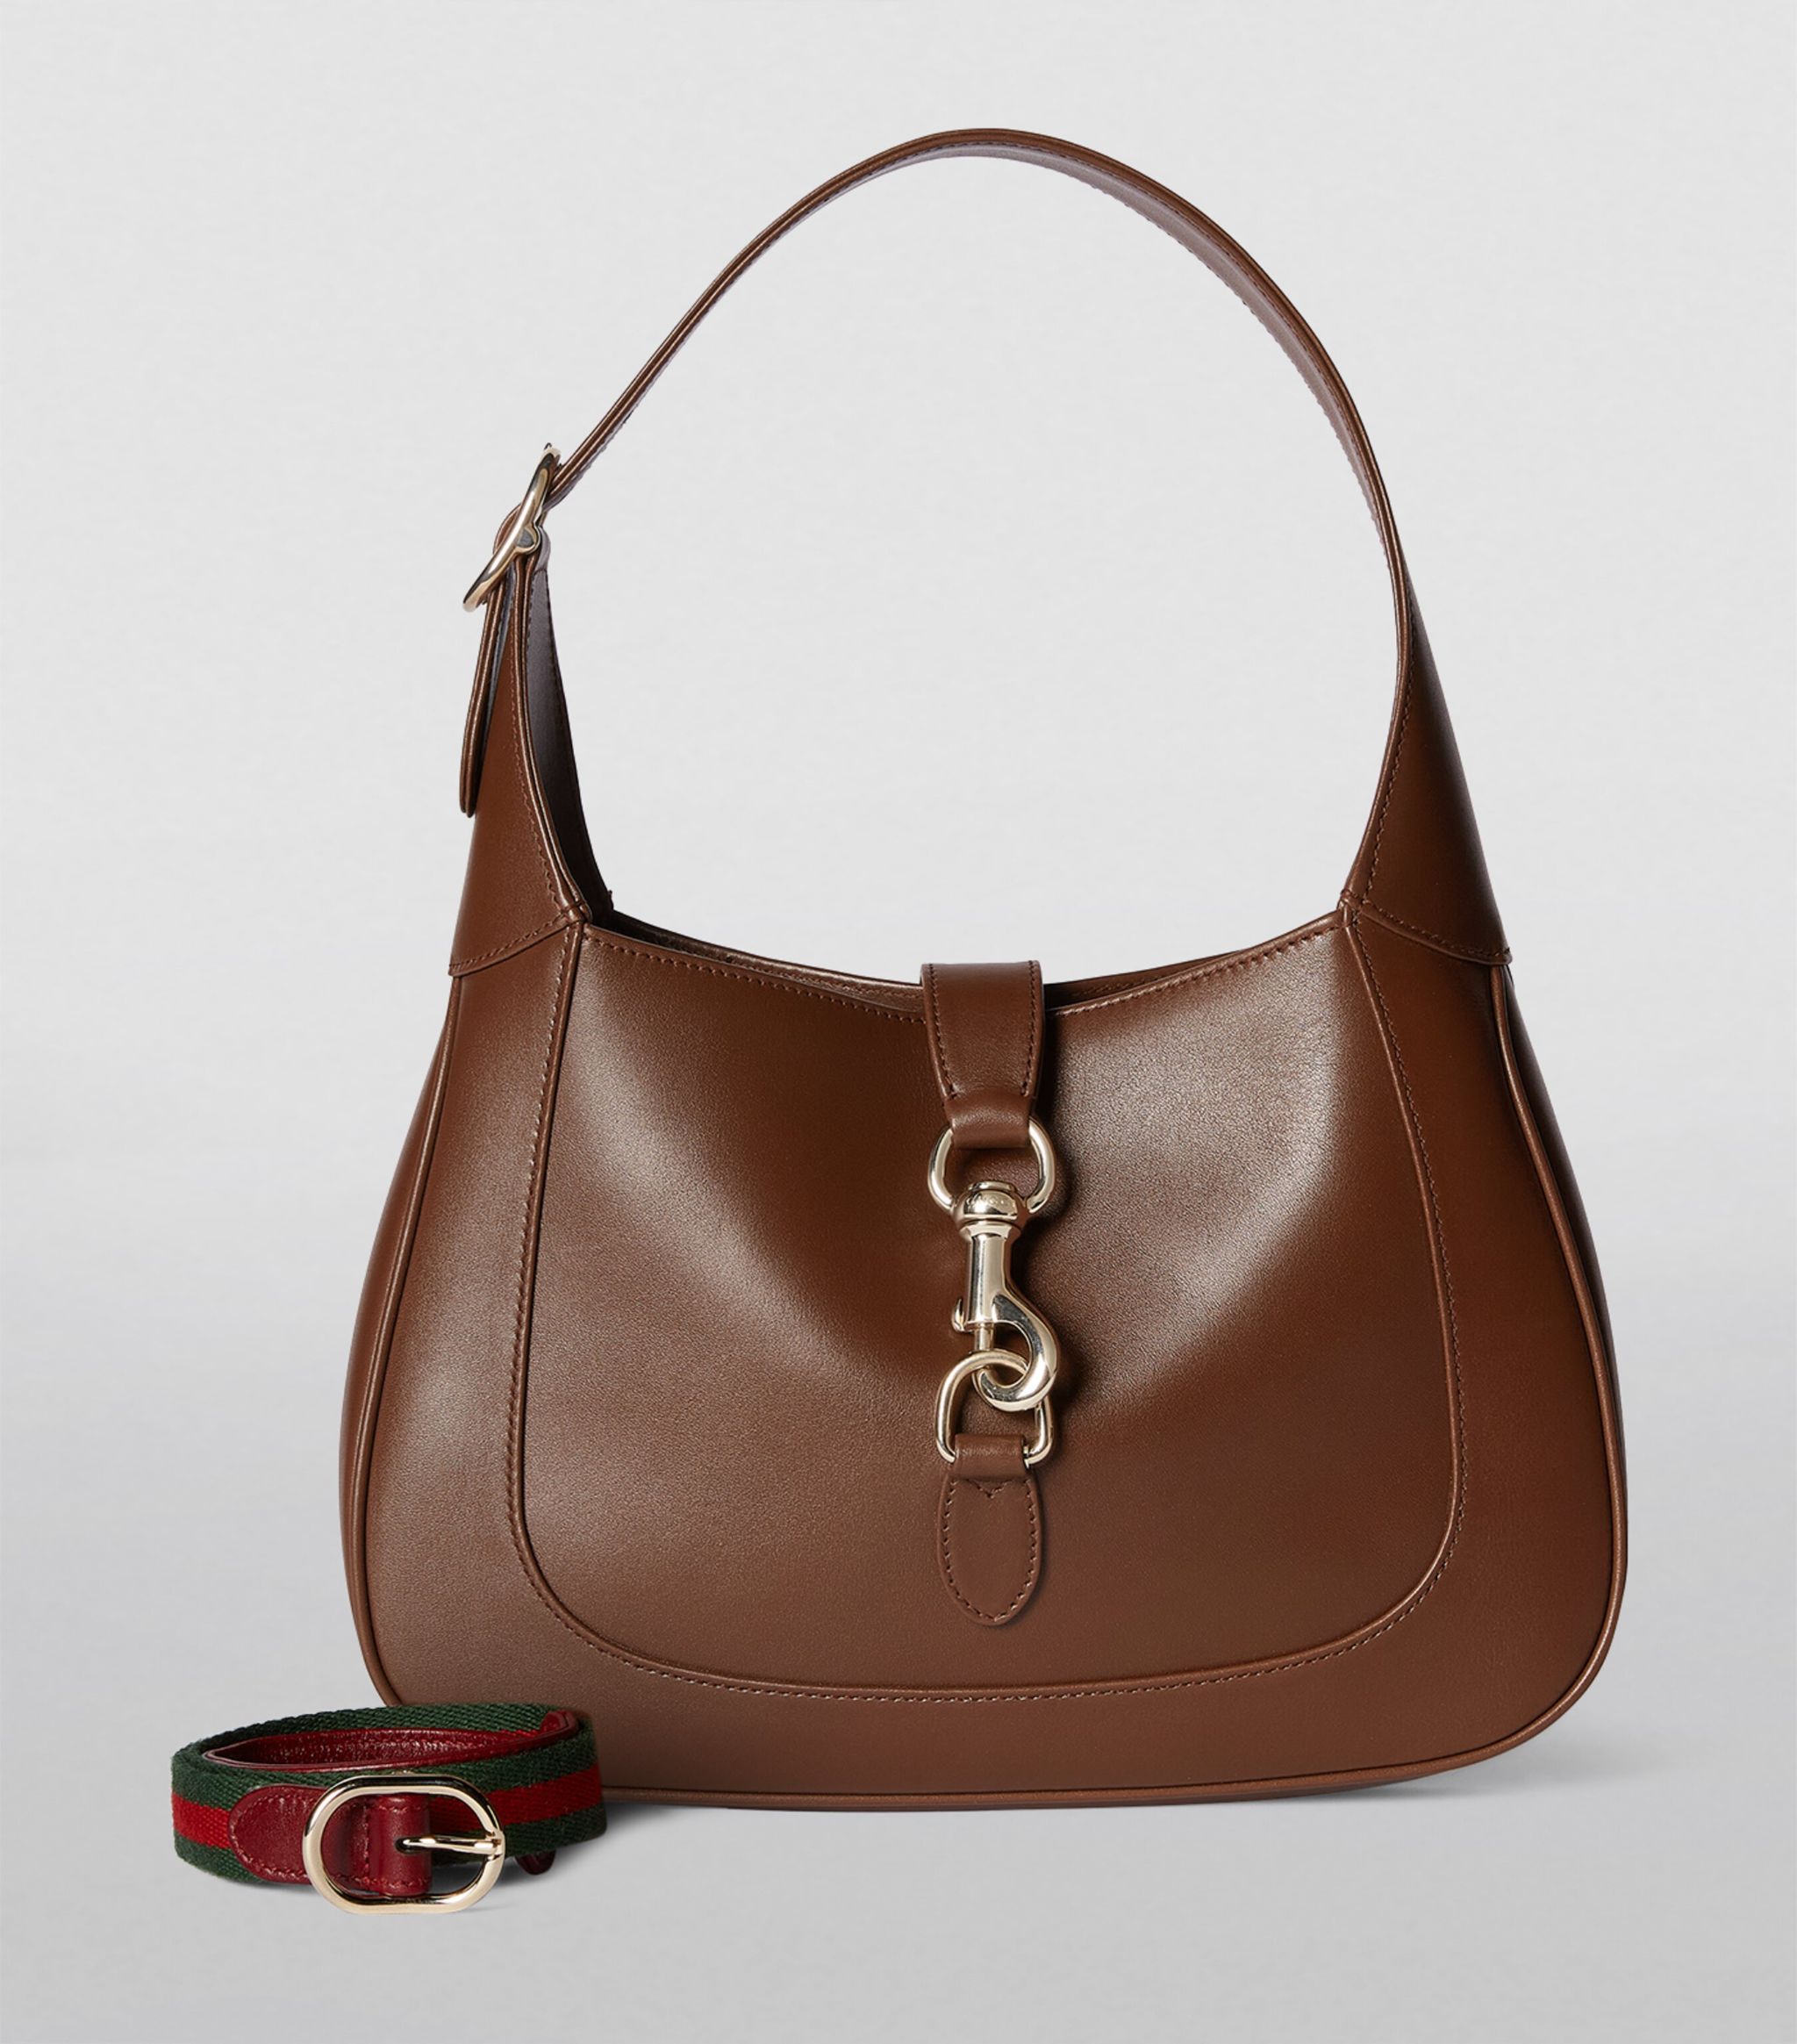 Die Handtasche ist fast identisch mit der legendären Jackie-Handtasche von Gucci